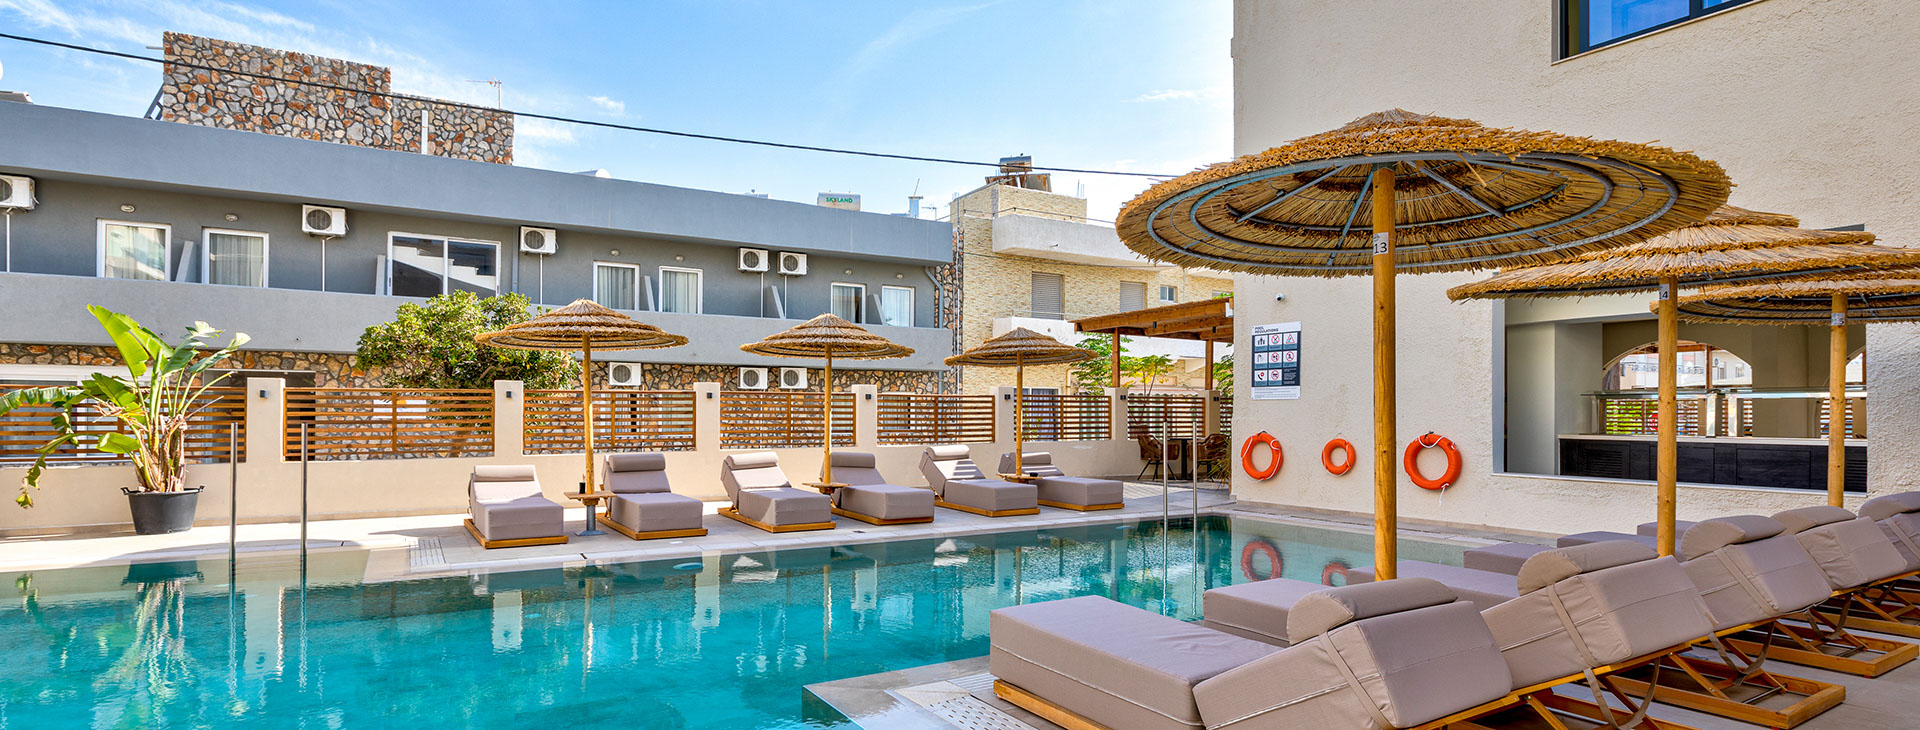 Cabana Beach Hotel & Suites Obrázek10